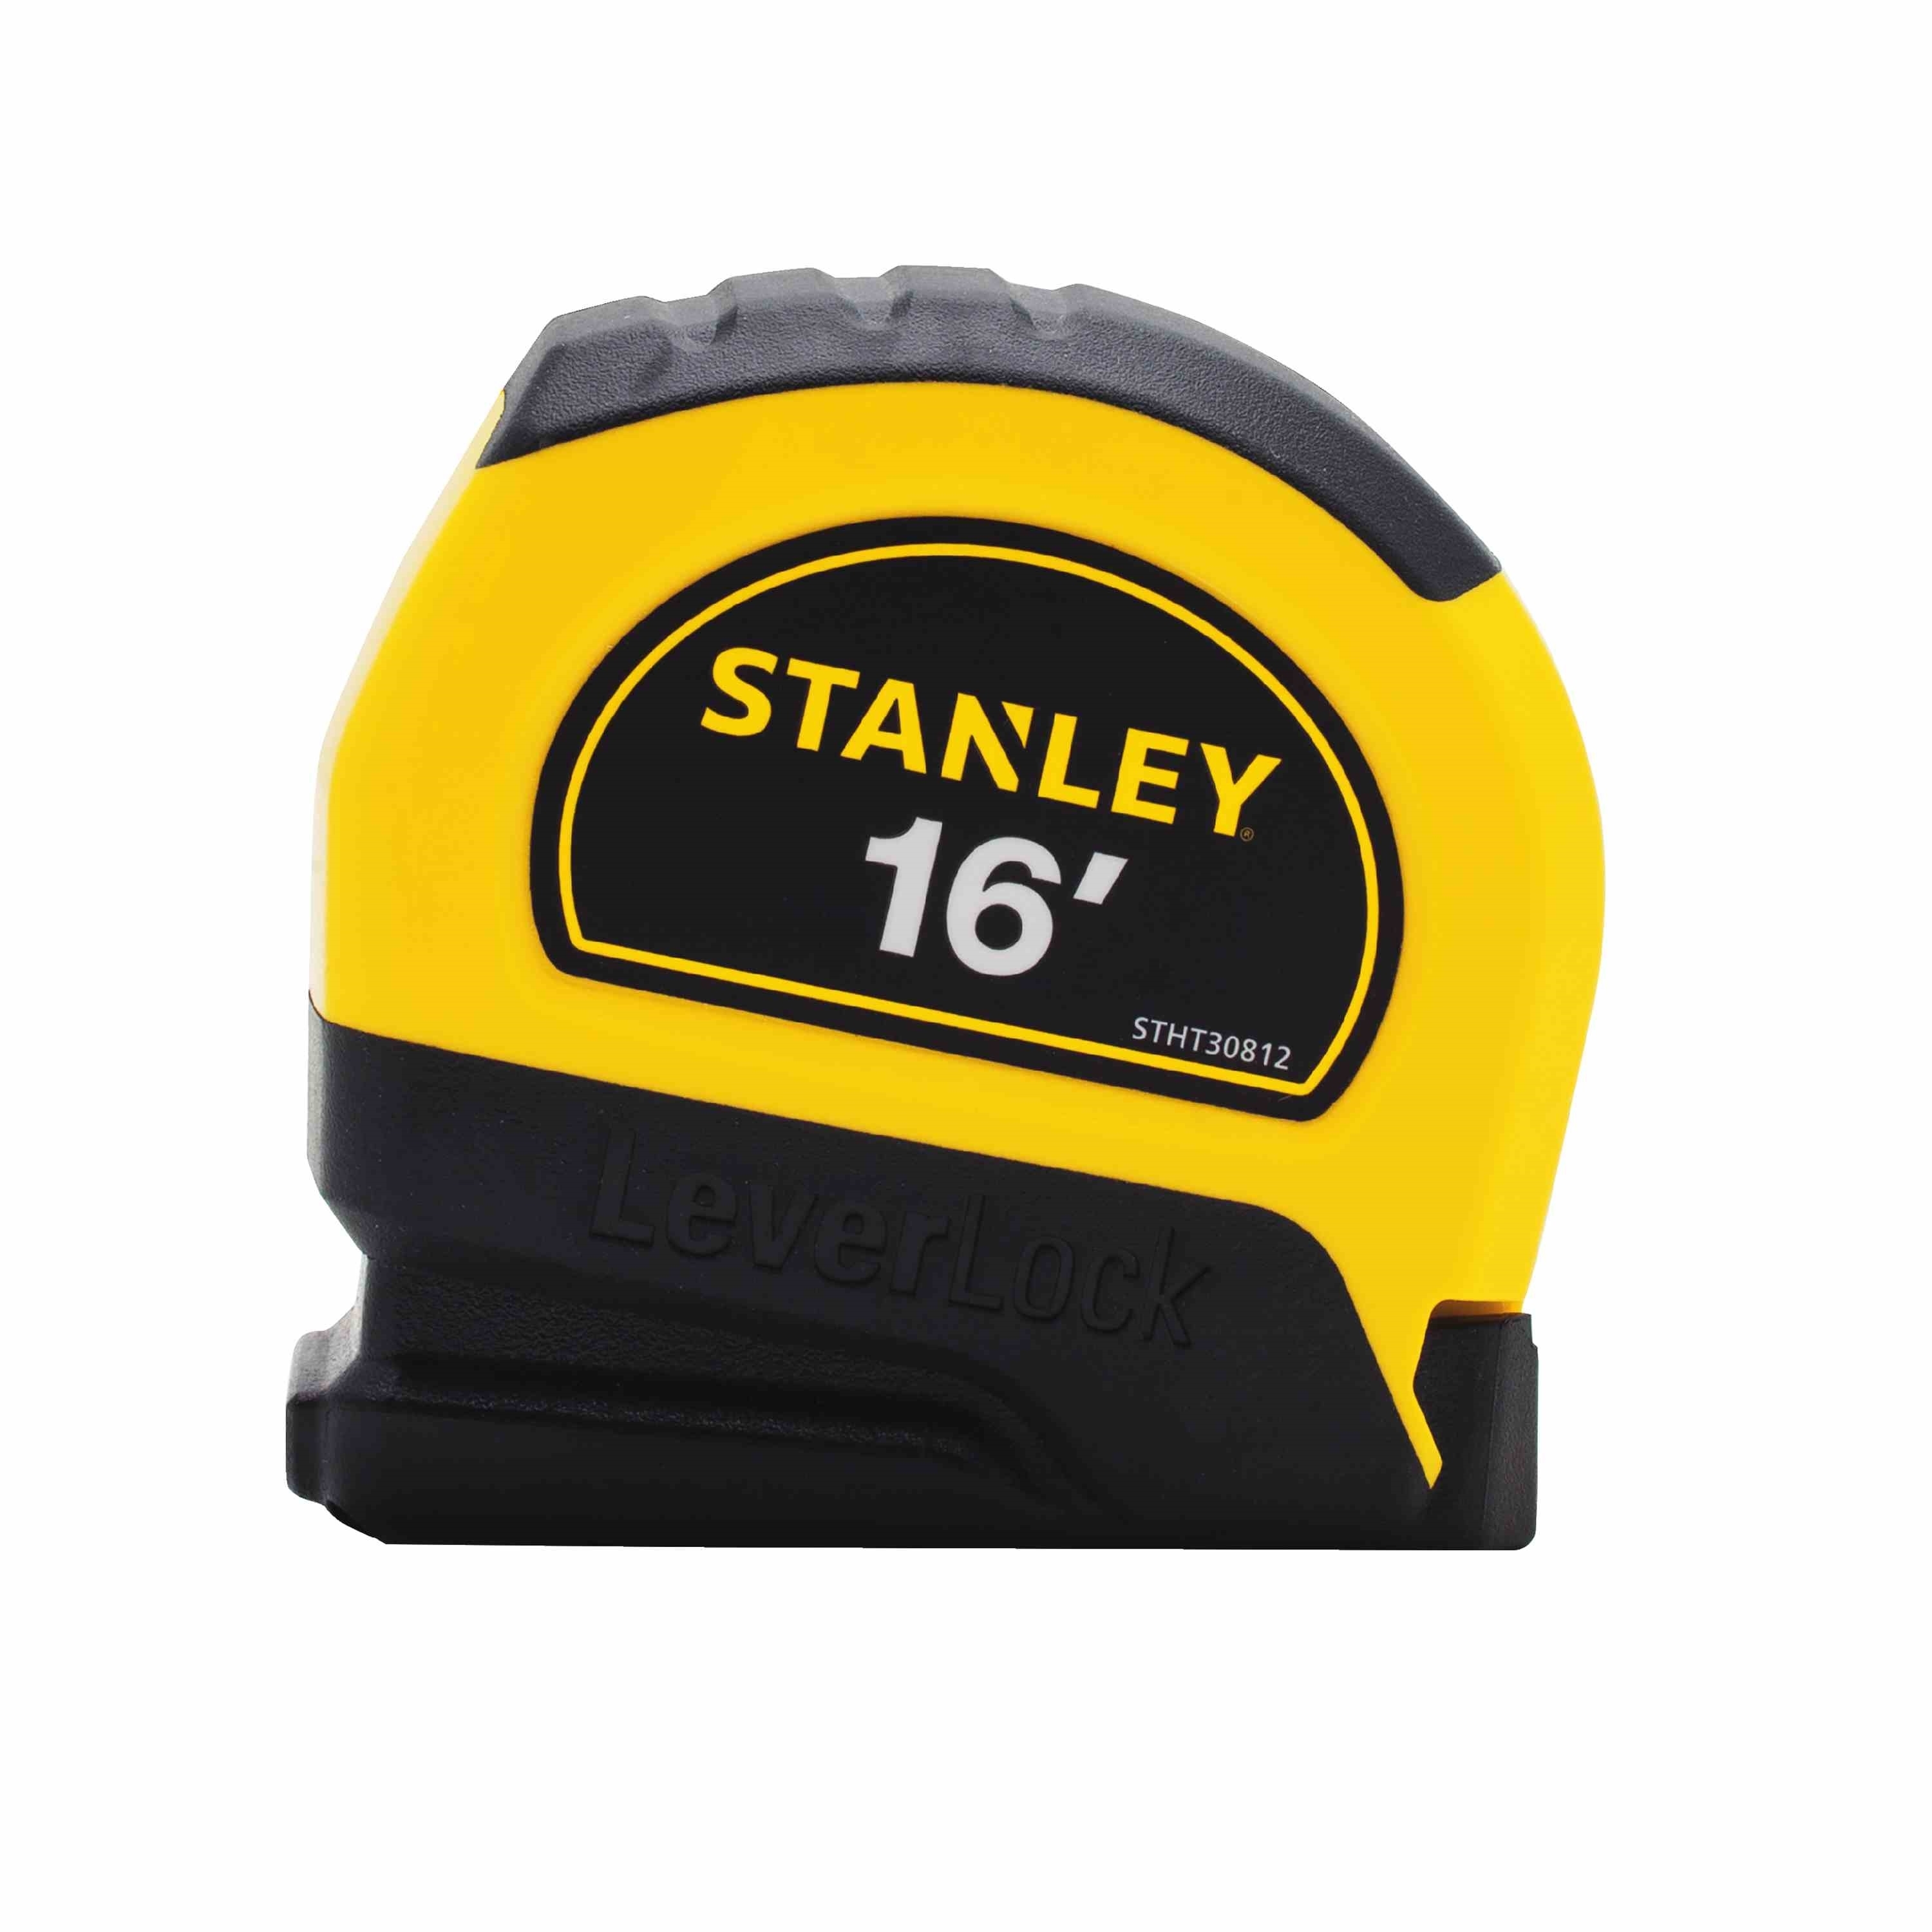 Stanley STHT30812